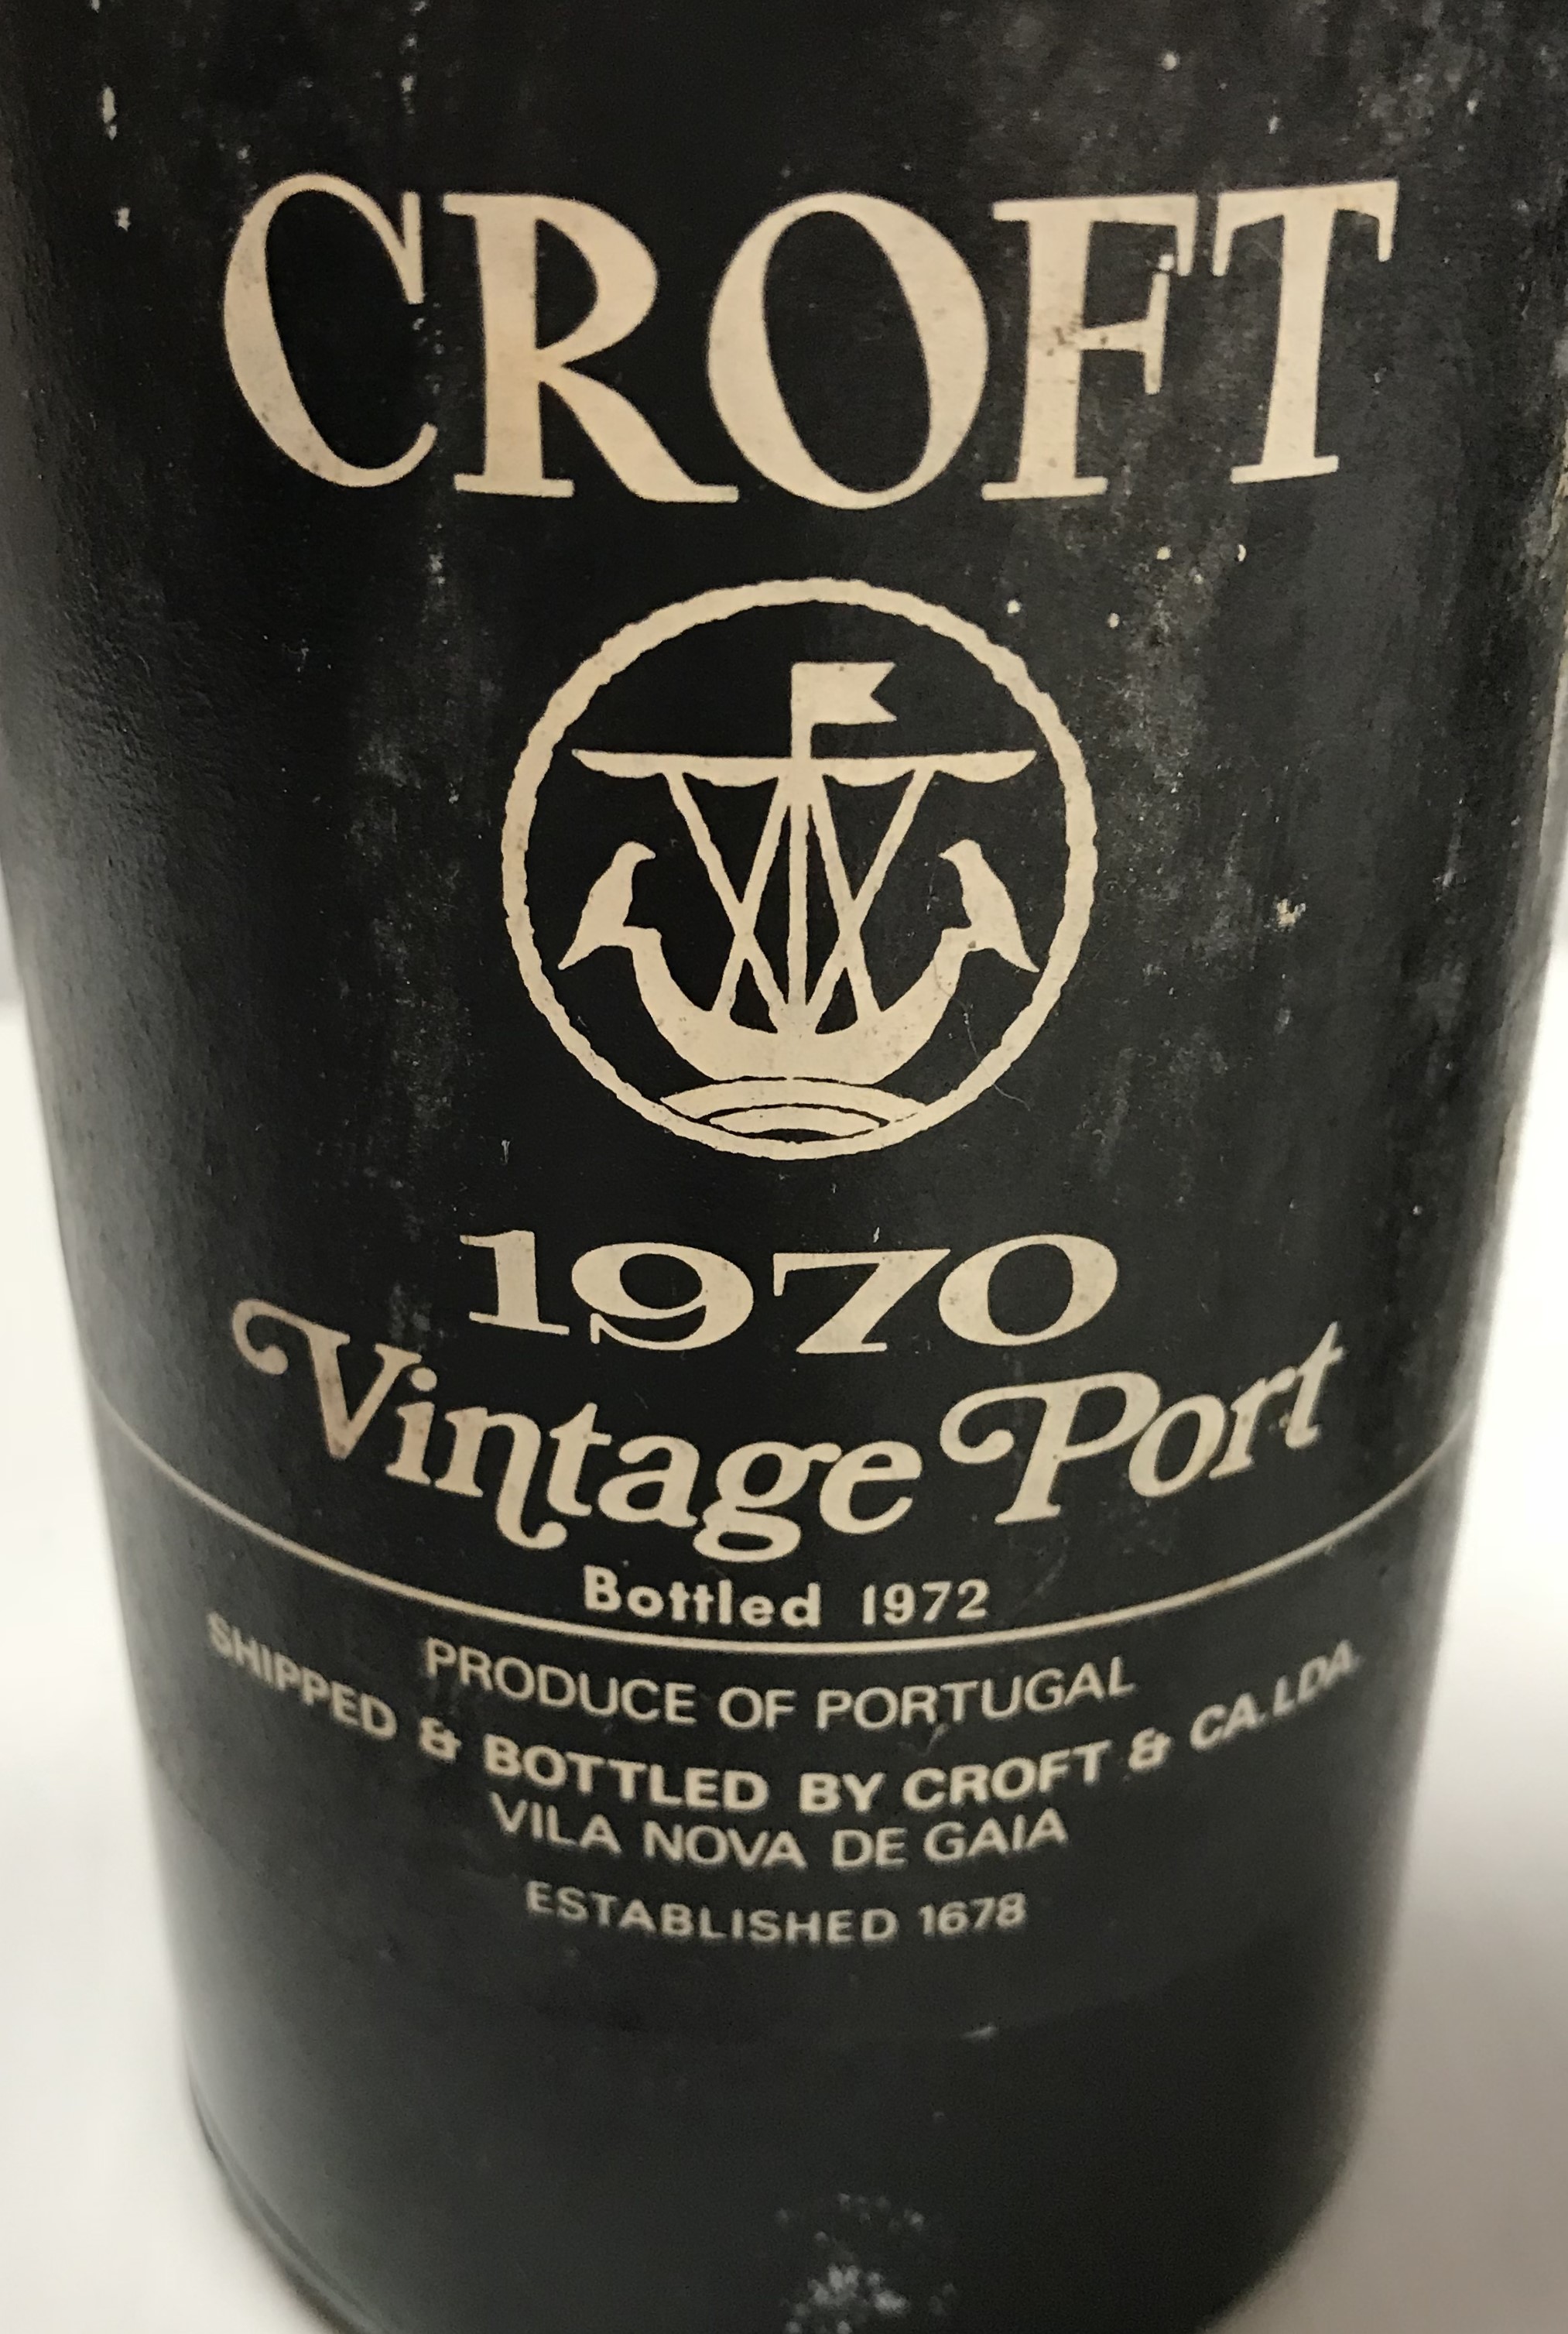 One bottle Taylor's vintage port 1970 and one bottle Croft vintage port 1970 - Image 2 of 3